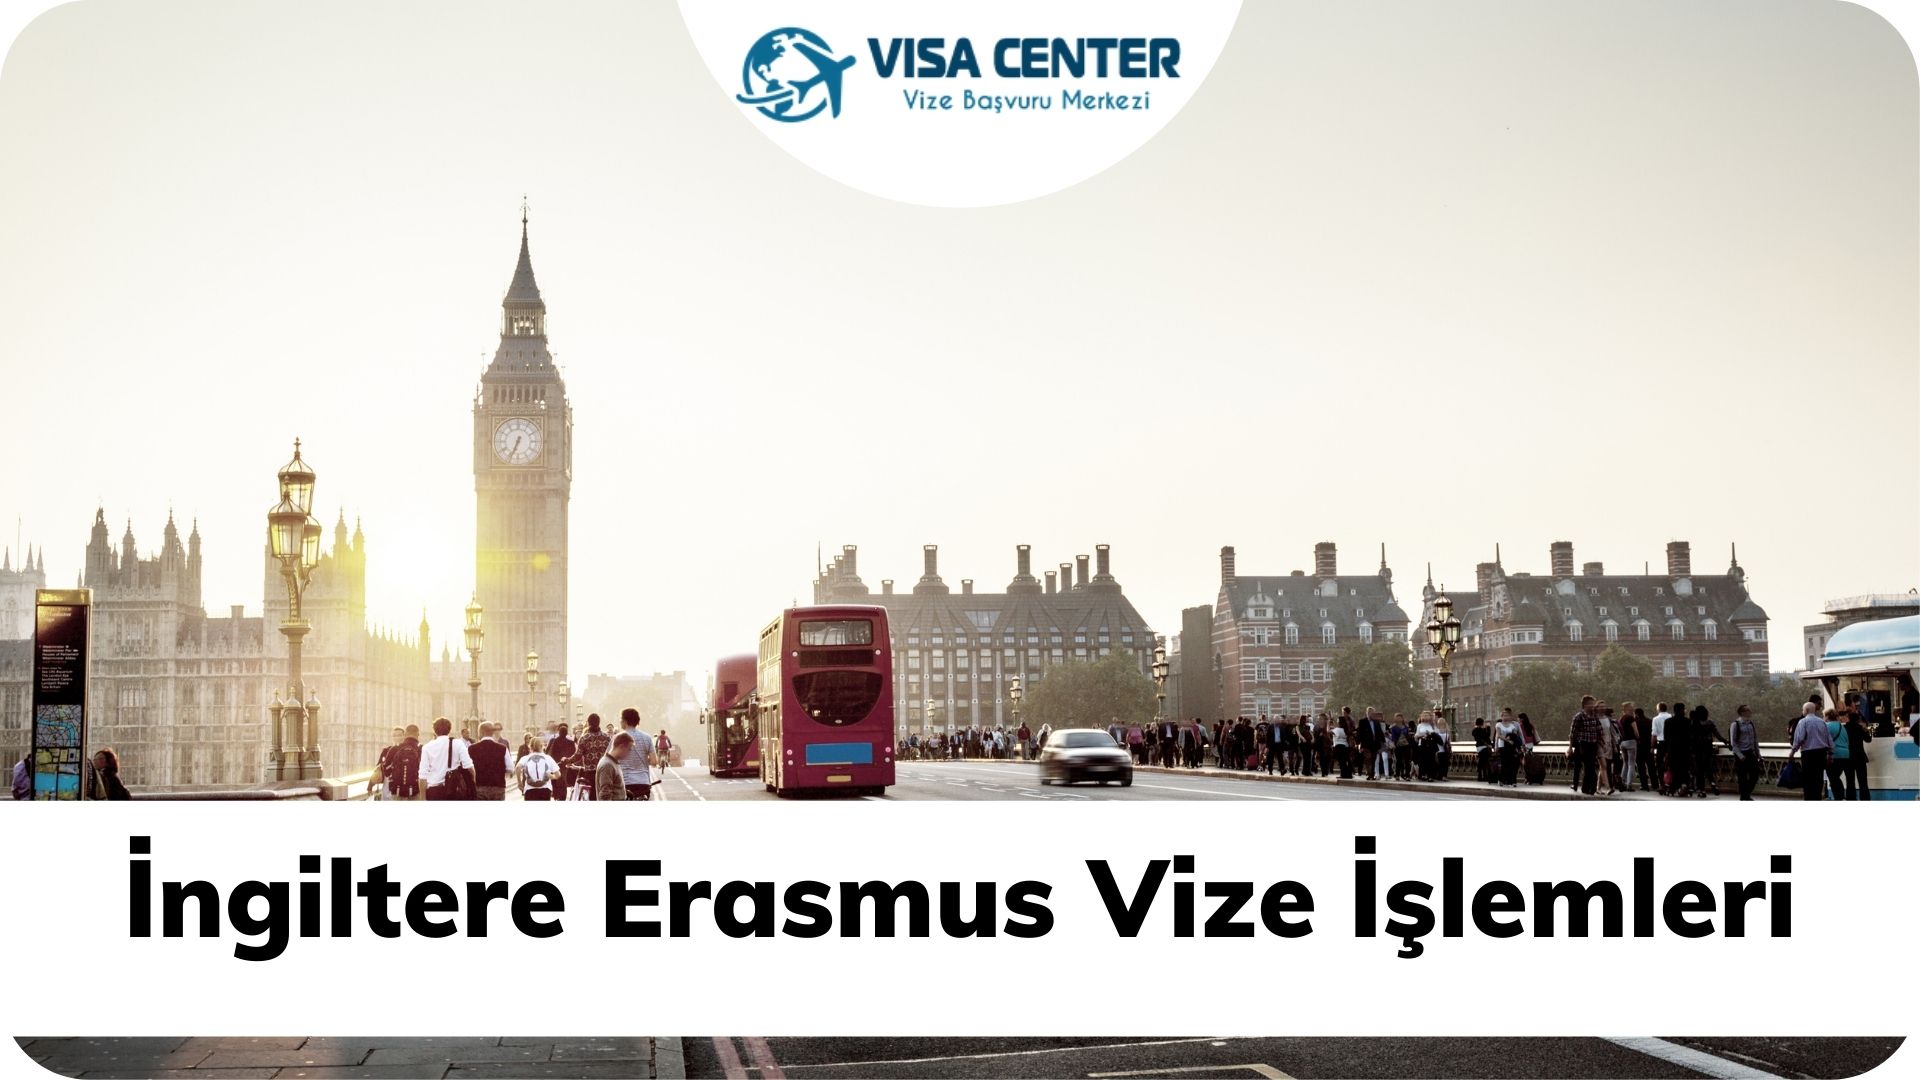 İngiltere Erasmus Vize İşelmleri